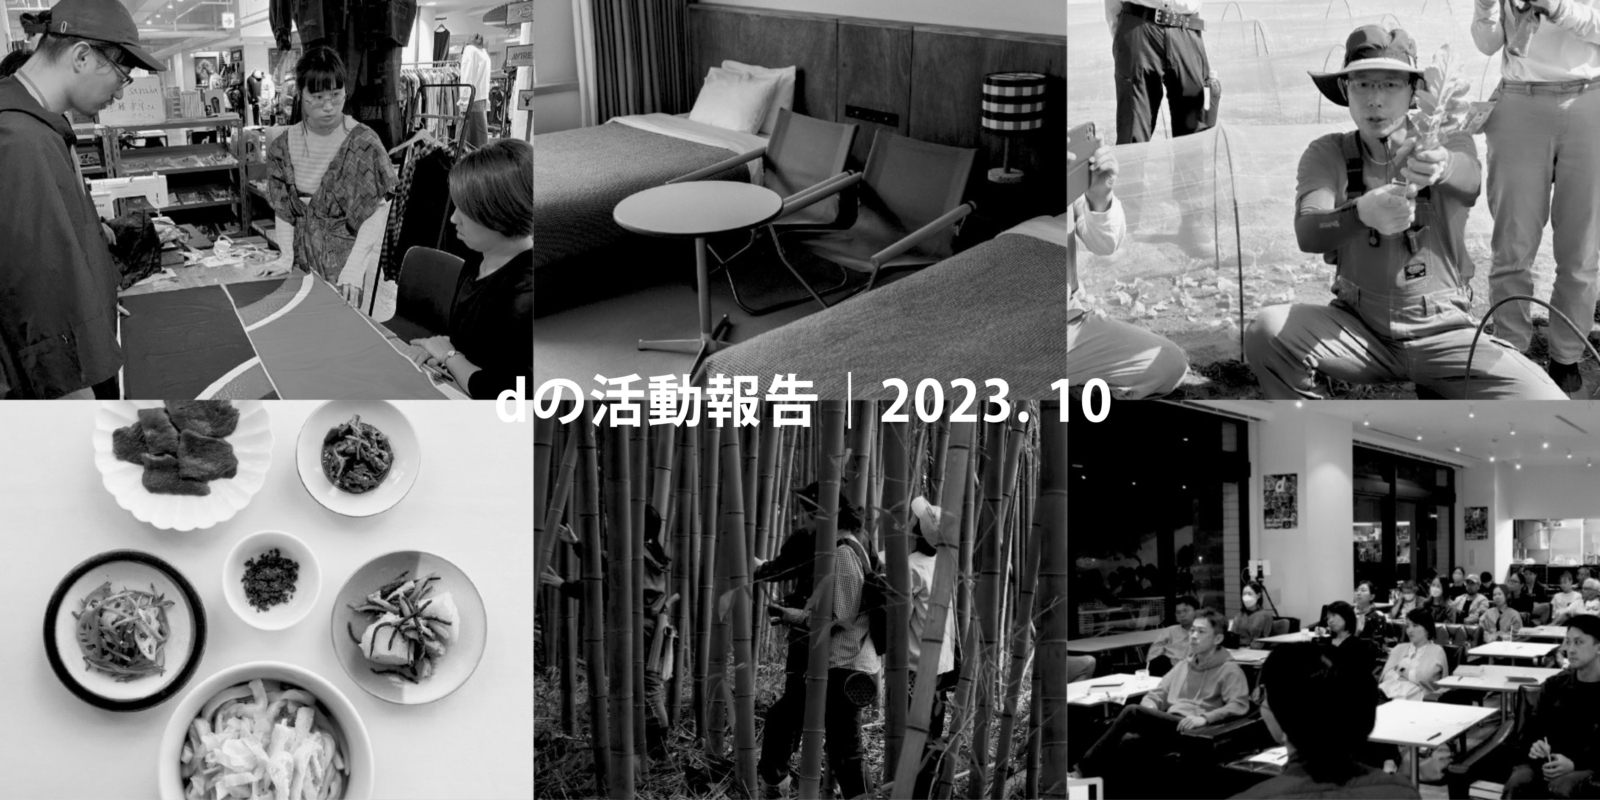 『d design travel』神奈川号の最新情報をお届けします。